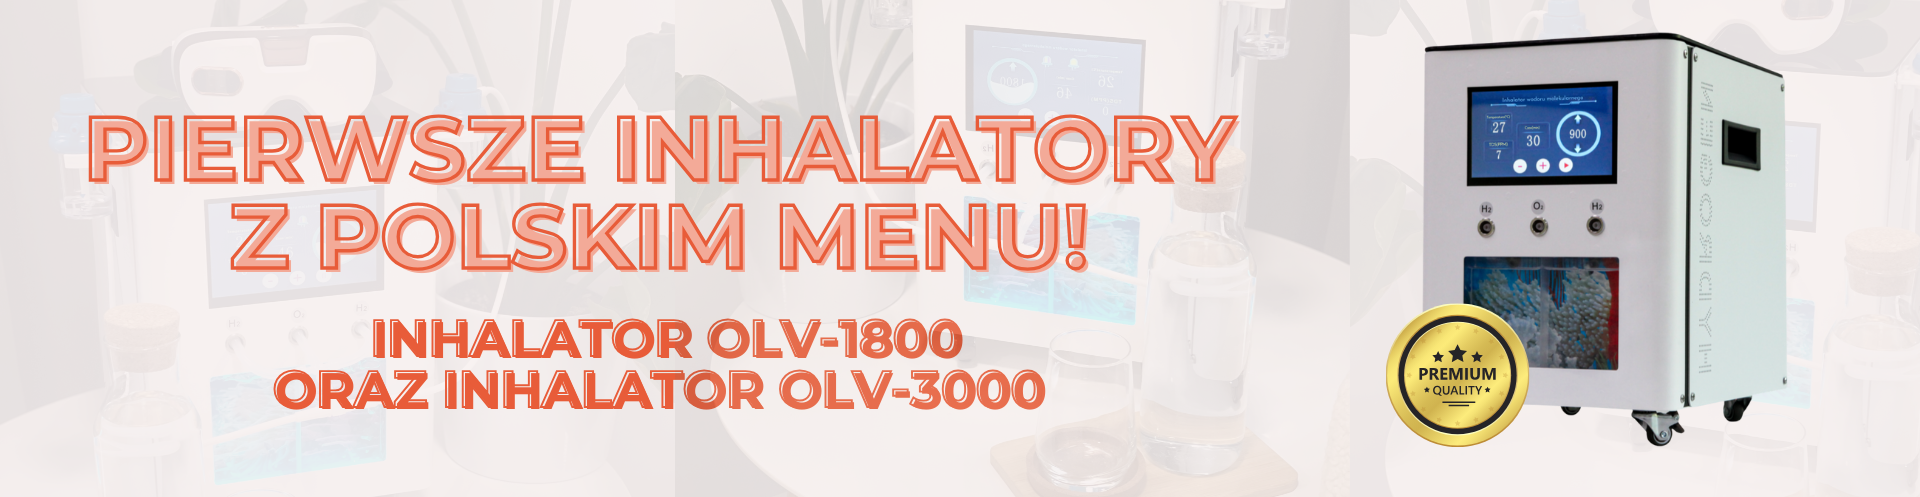 Pierwsze Inhalatory z polskim menu!